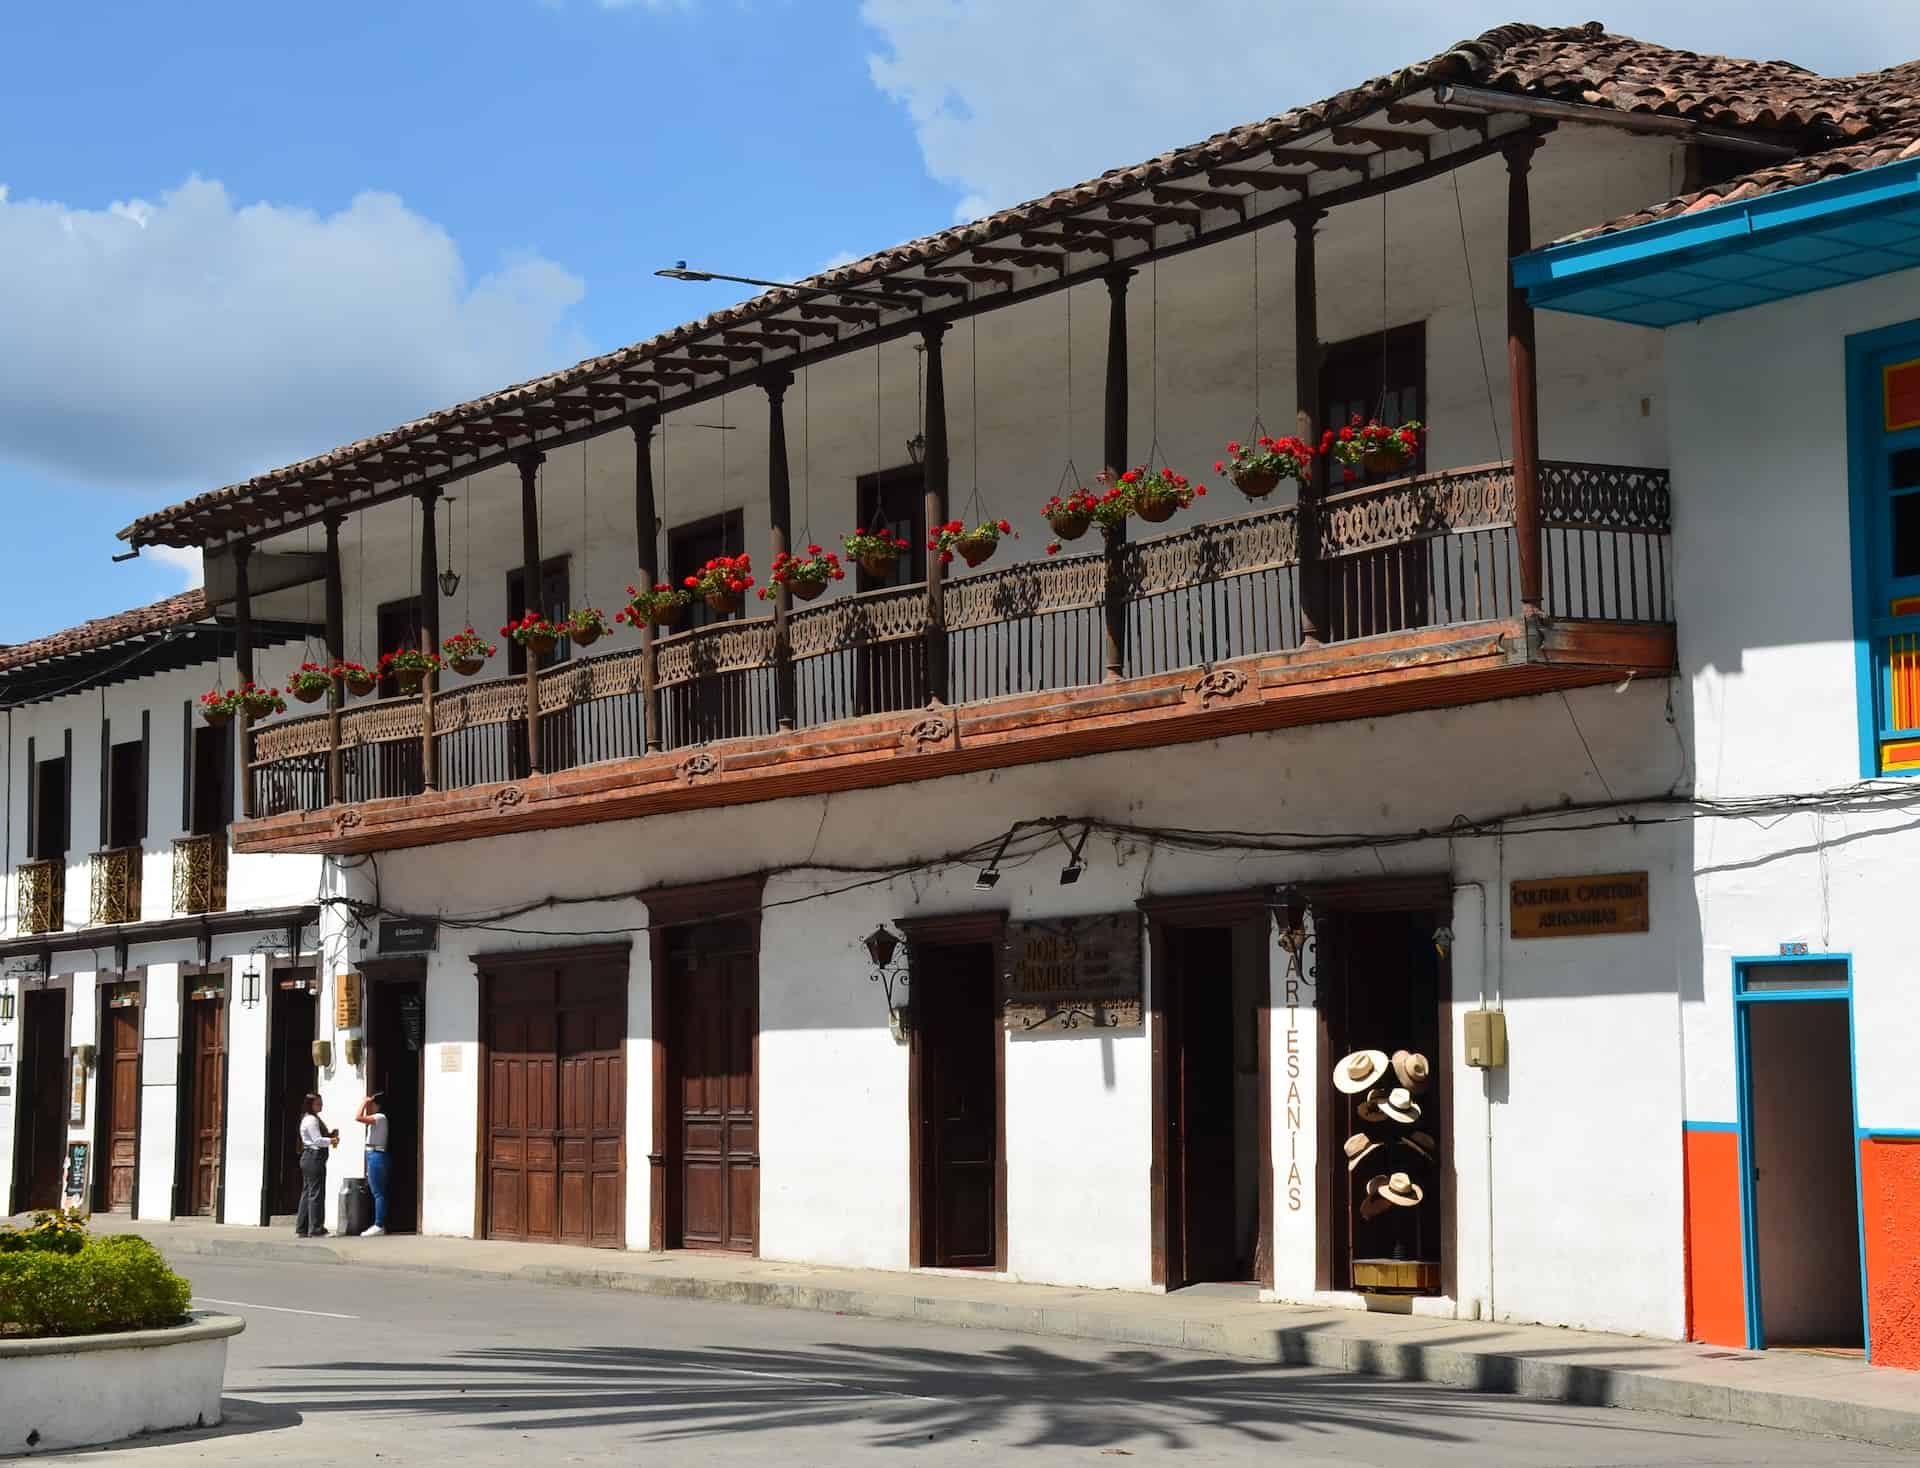 Casa del Degüello in Salamina, Caldas, Colombia